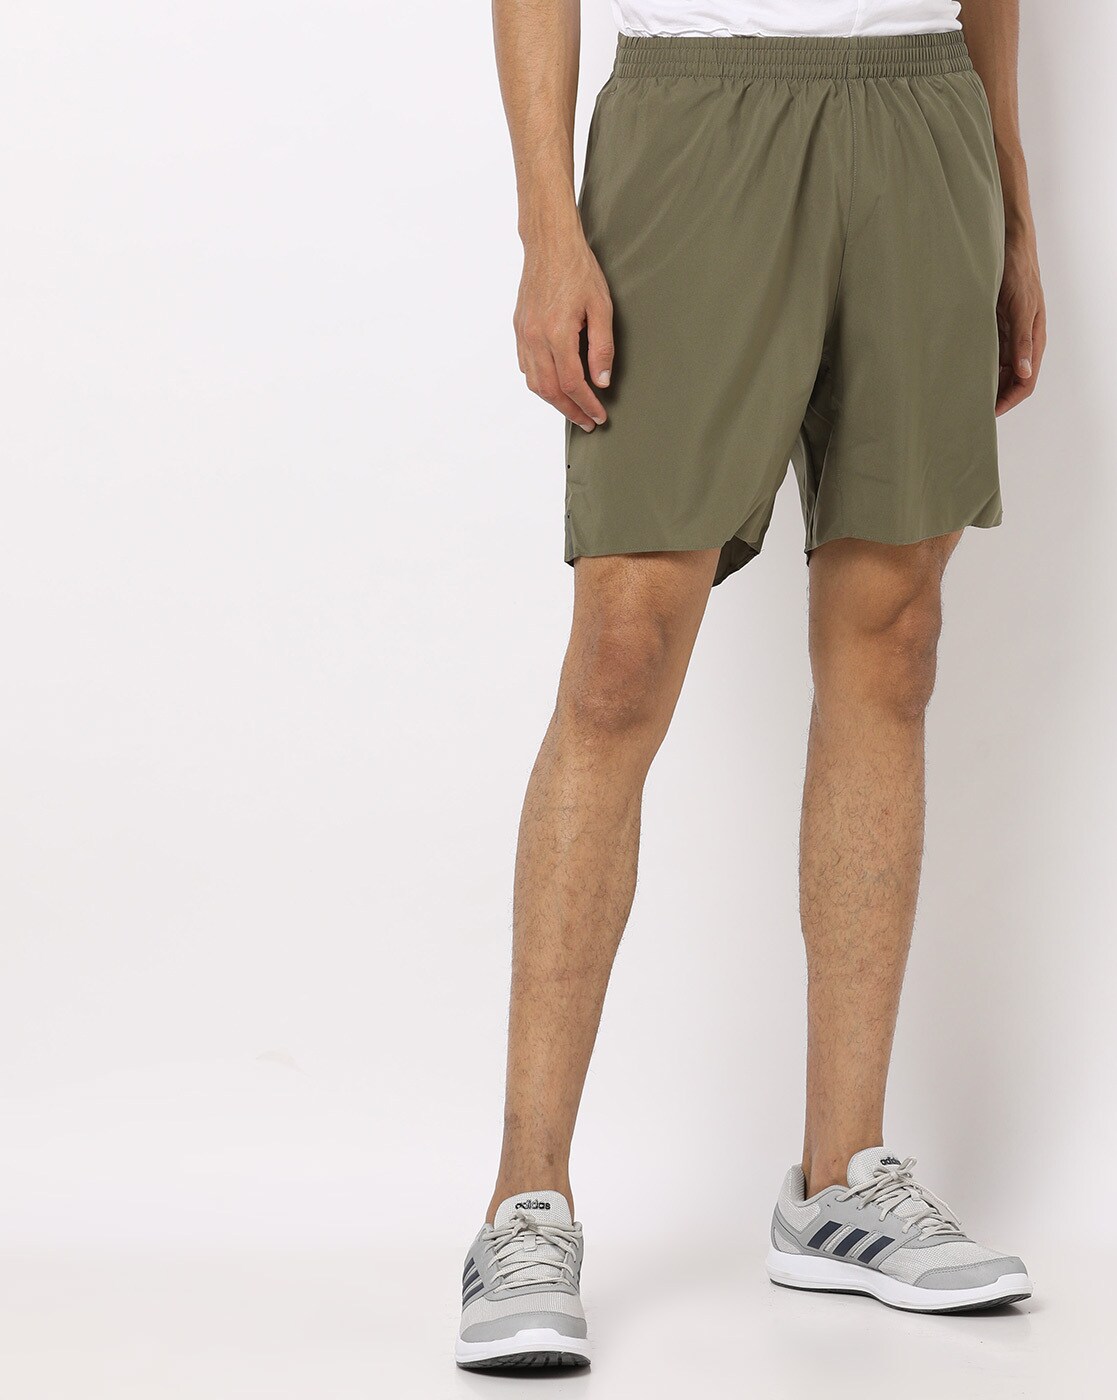 adidas olive green shorts